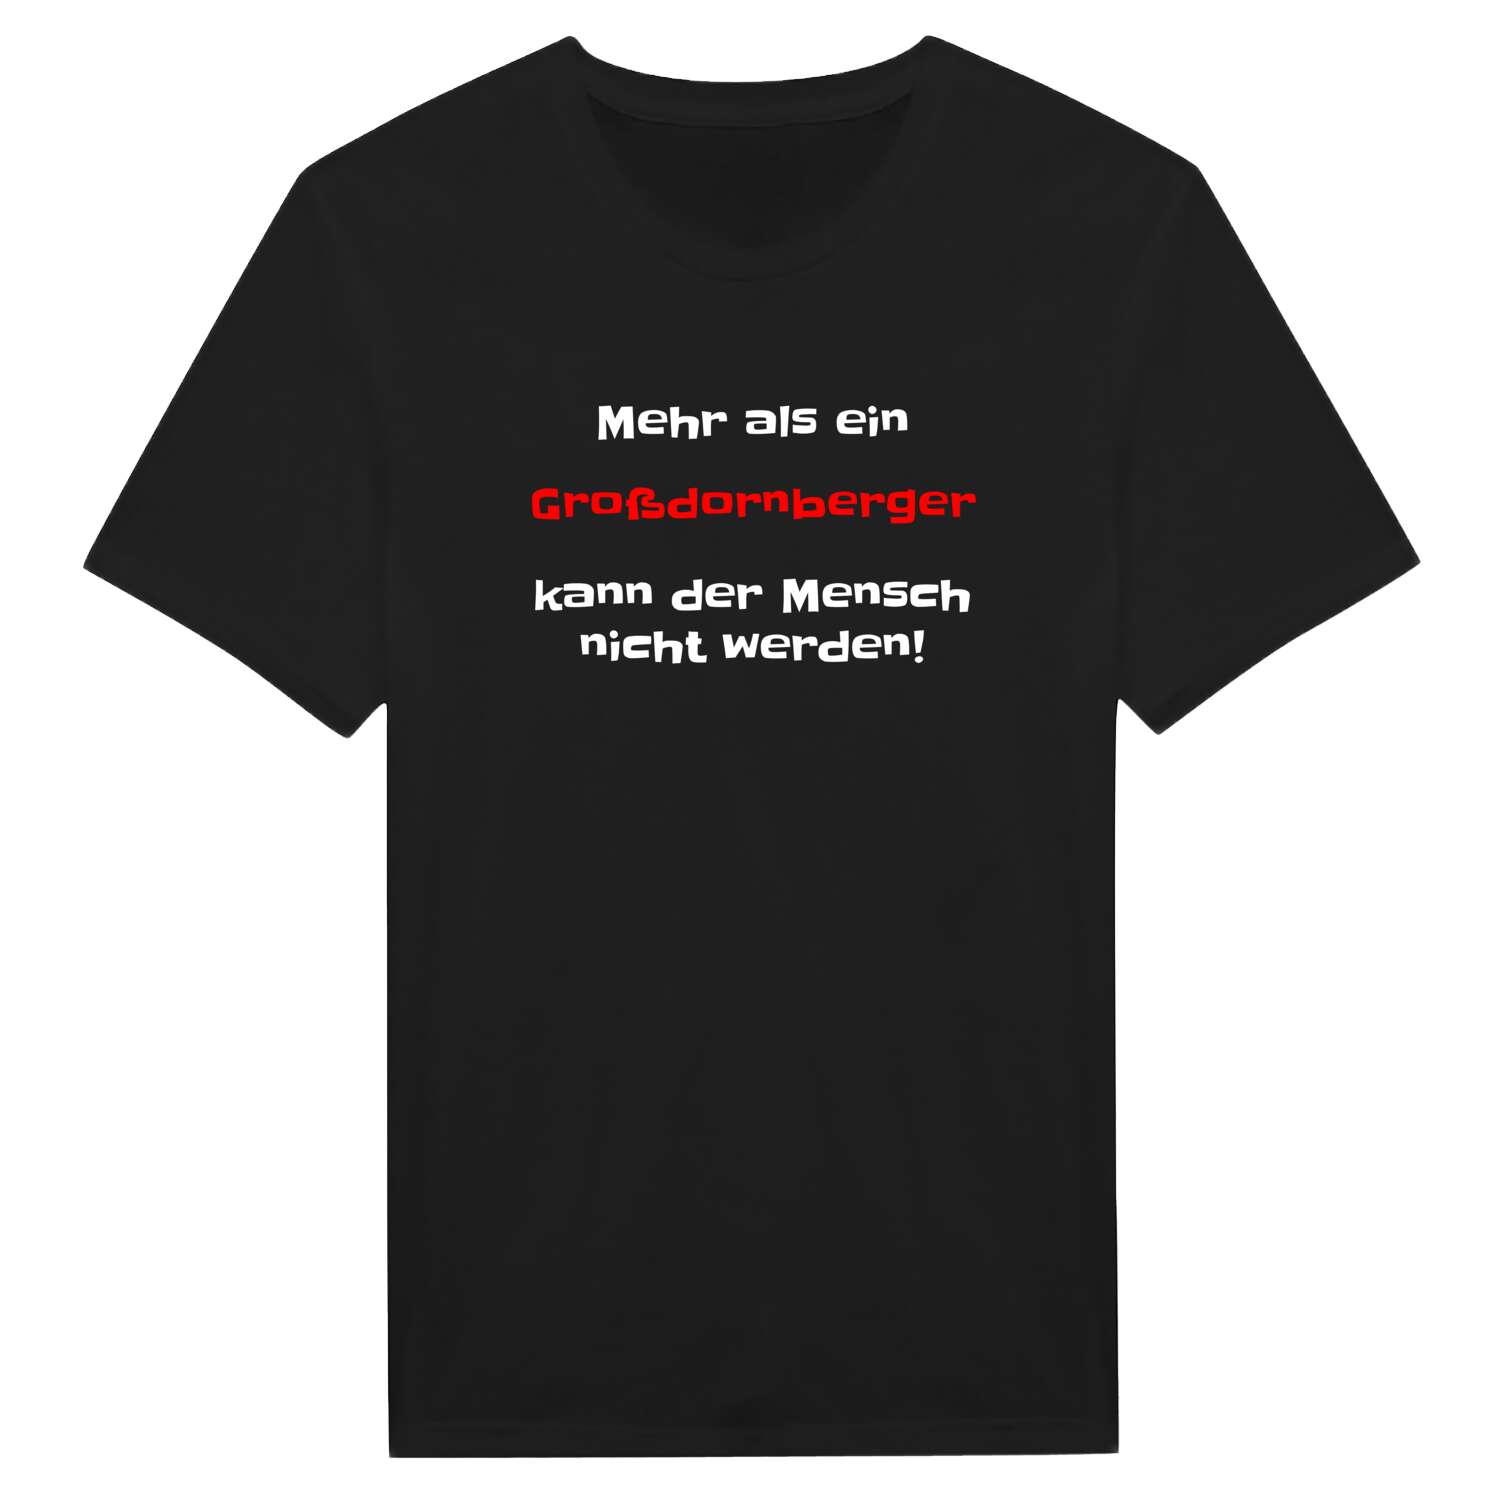 Großdornberg T-Shirt »Mehr als ein«